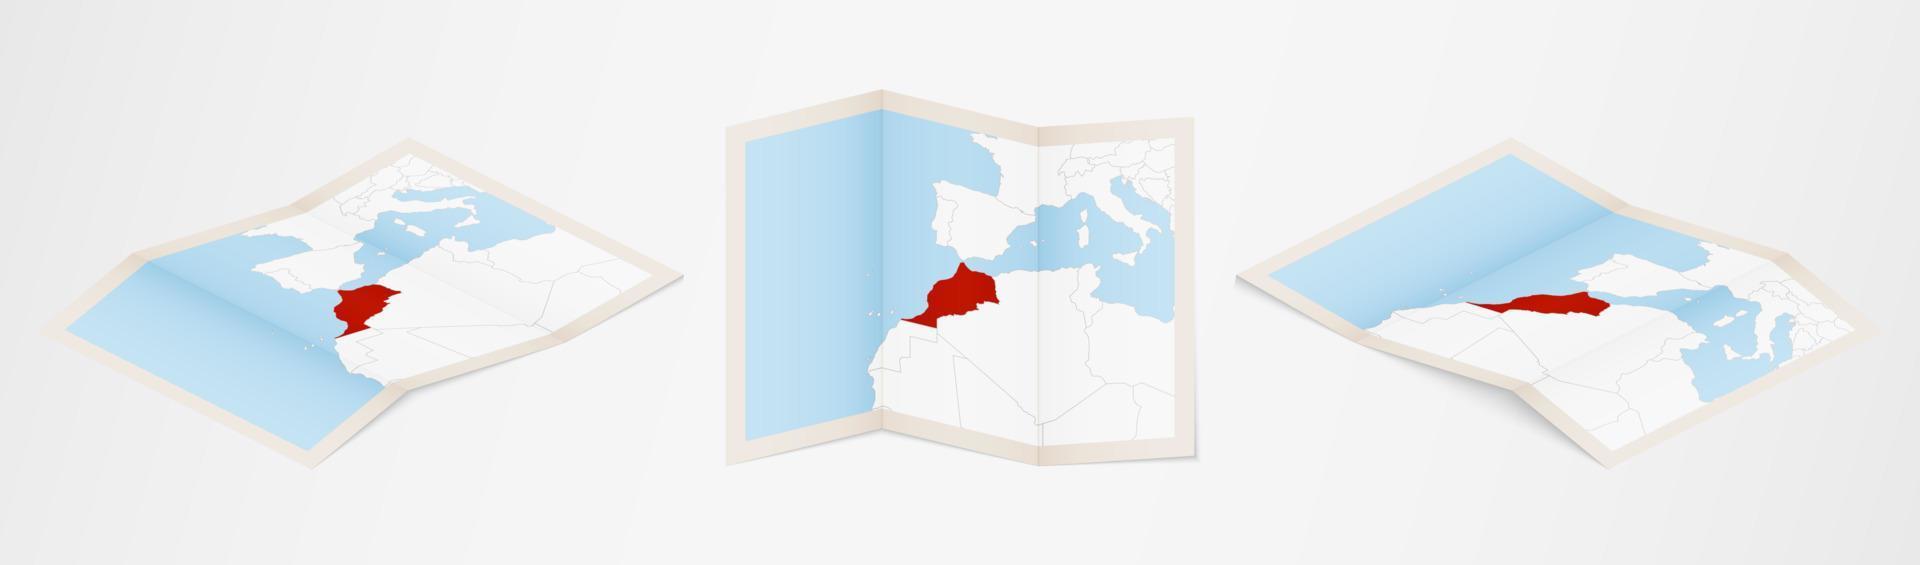 vikta Karta av marocko i tre annorlunda versioner. vektor